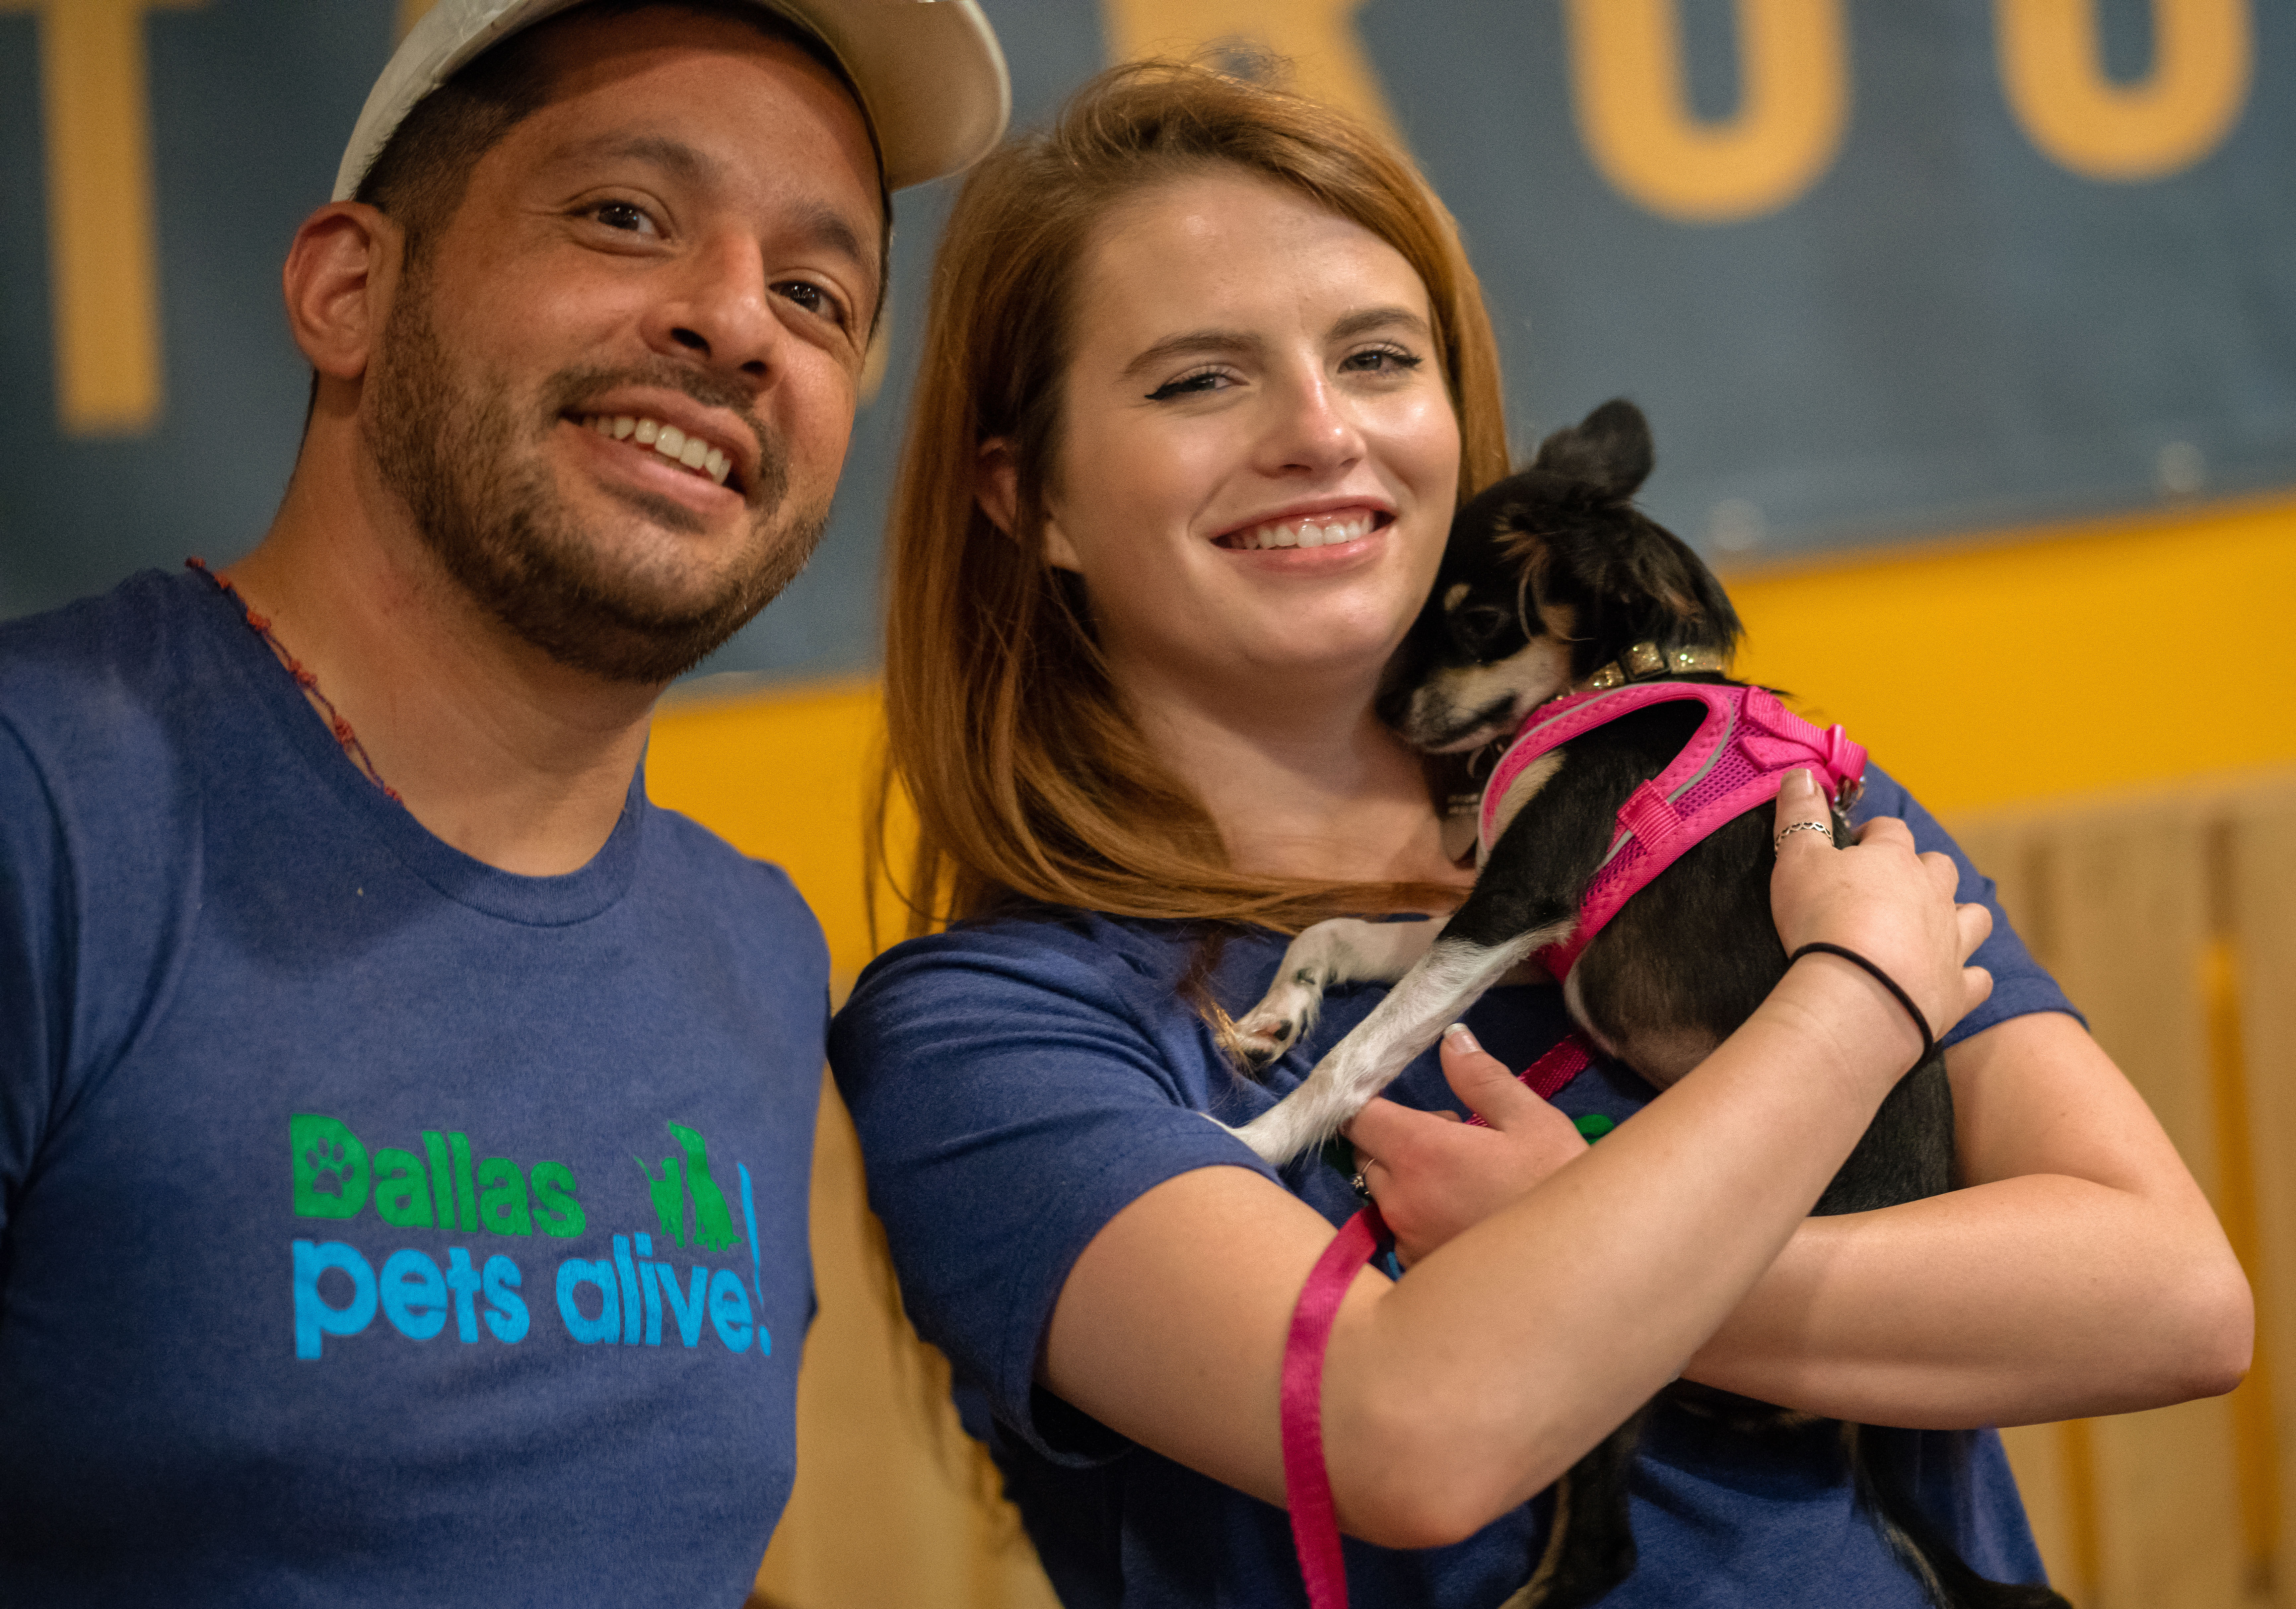 volunteer with dallas pets alive